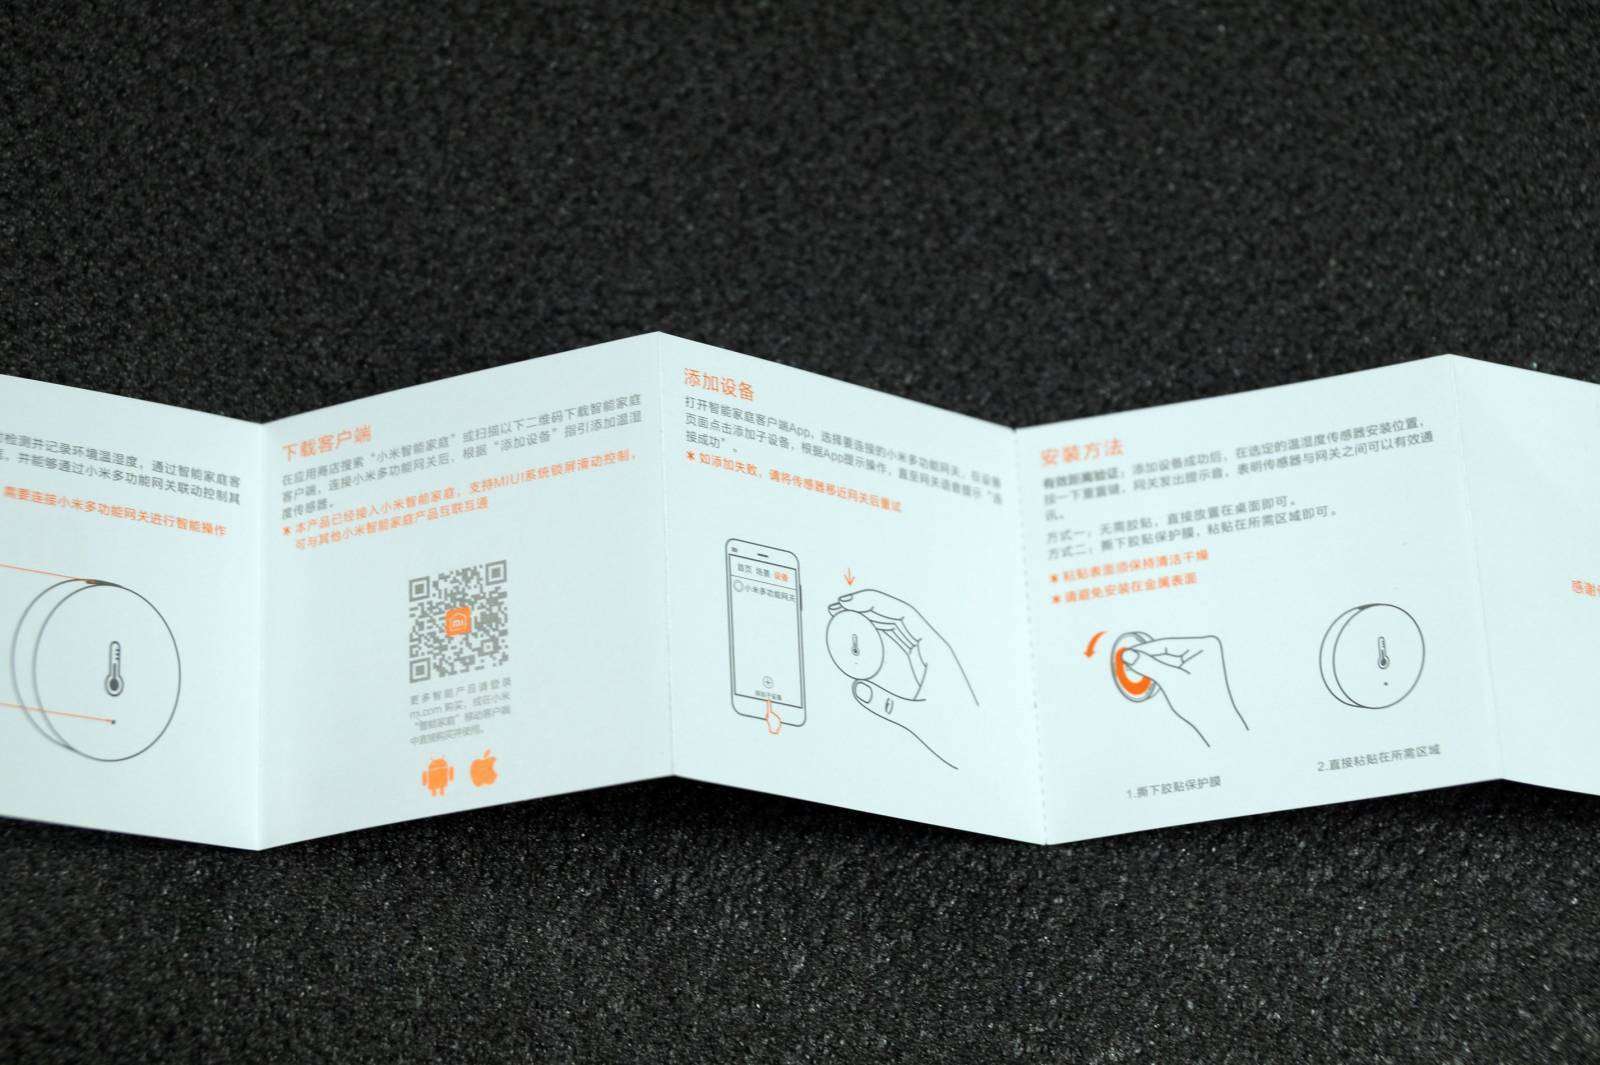 GearBest: Обзор - Xiaomi система безопасности умного дома, шлюз, датчики движения, открытия дверей